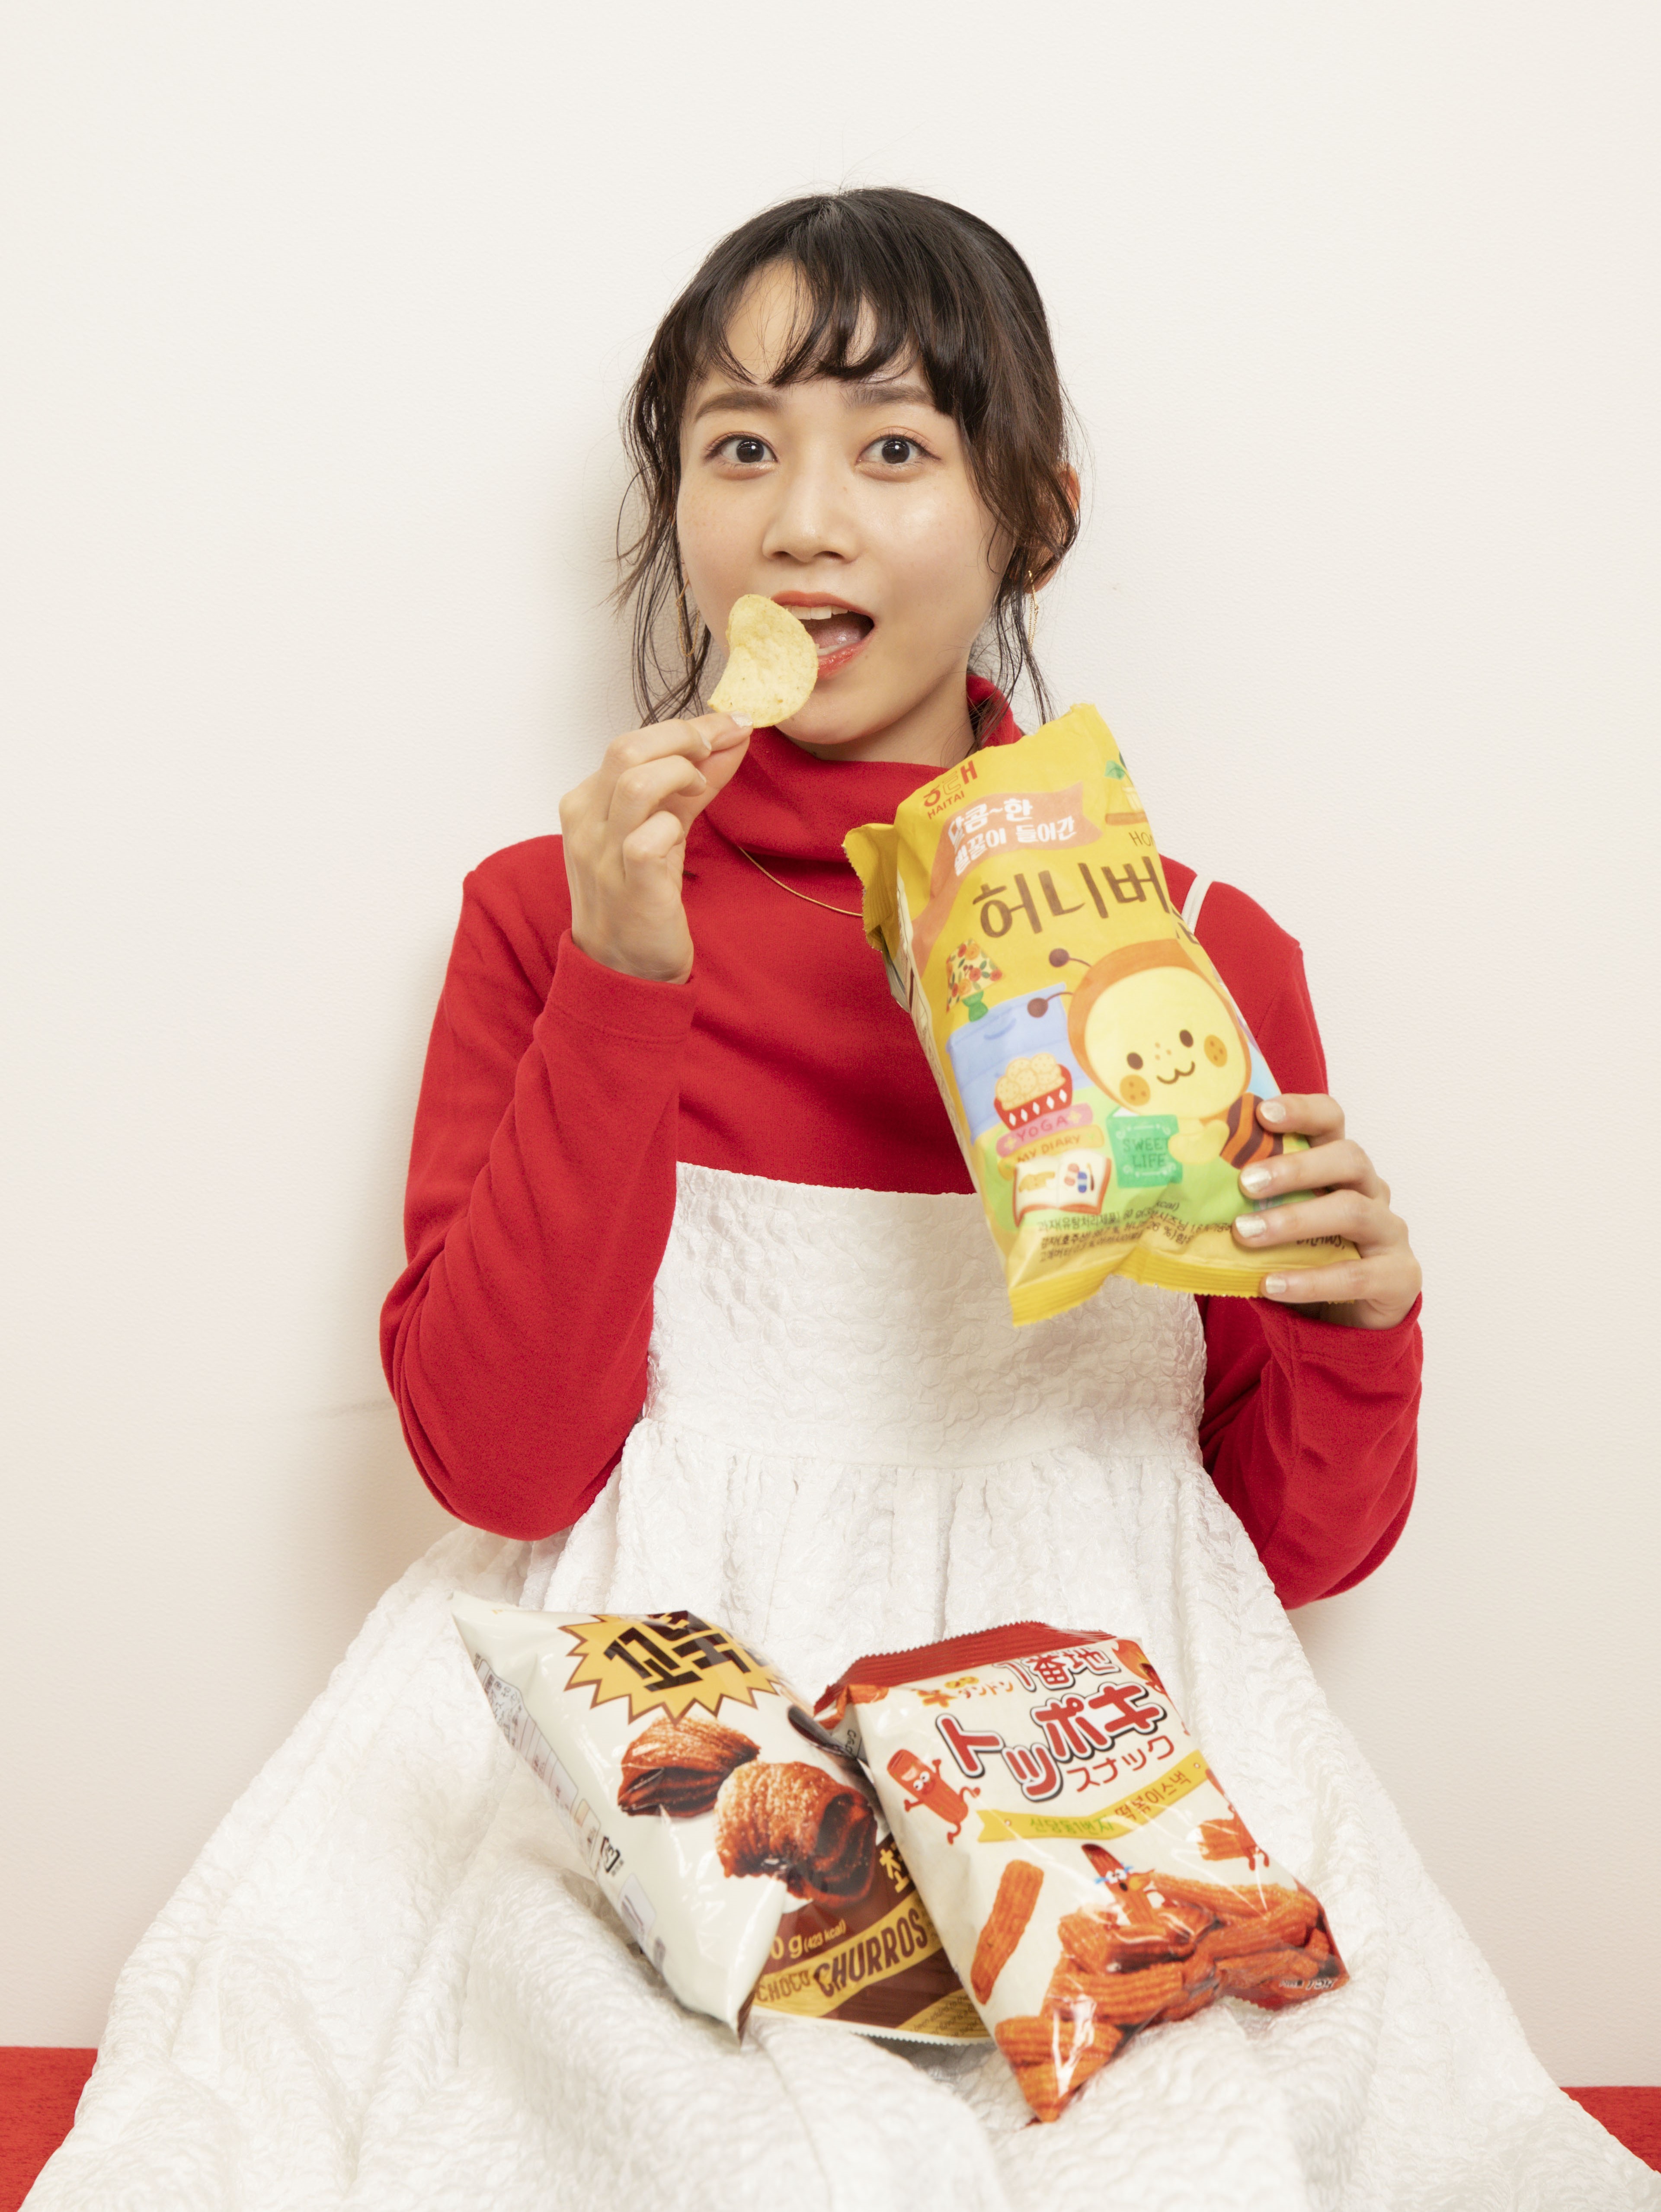 Qoo10 Presents「ドラマ観ながら、なに食べよ？」
三戸 なつめも止まらない！
「めっちゃ美味しい！パクパクいける♪」
韓国映画のお供には、やっぱり韓国のスナック菓子！